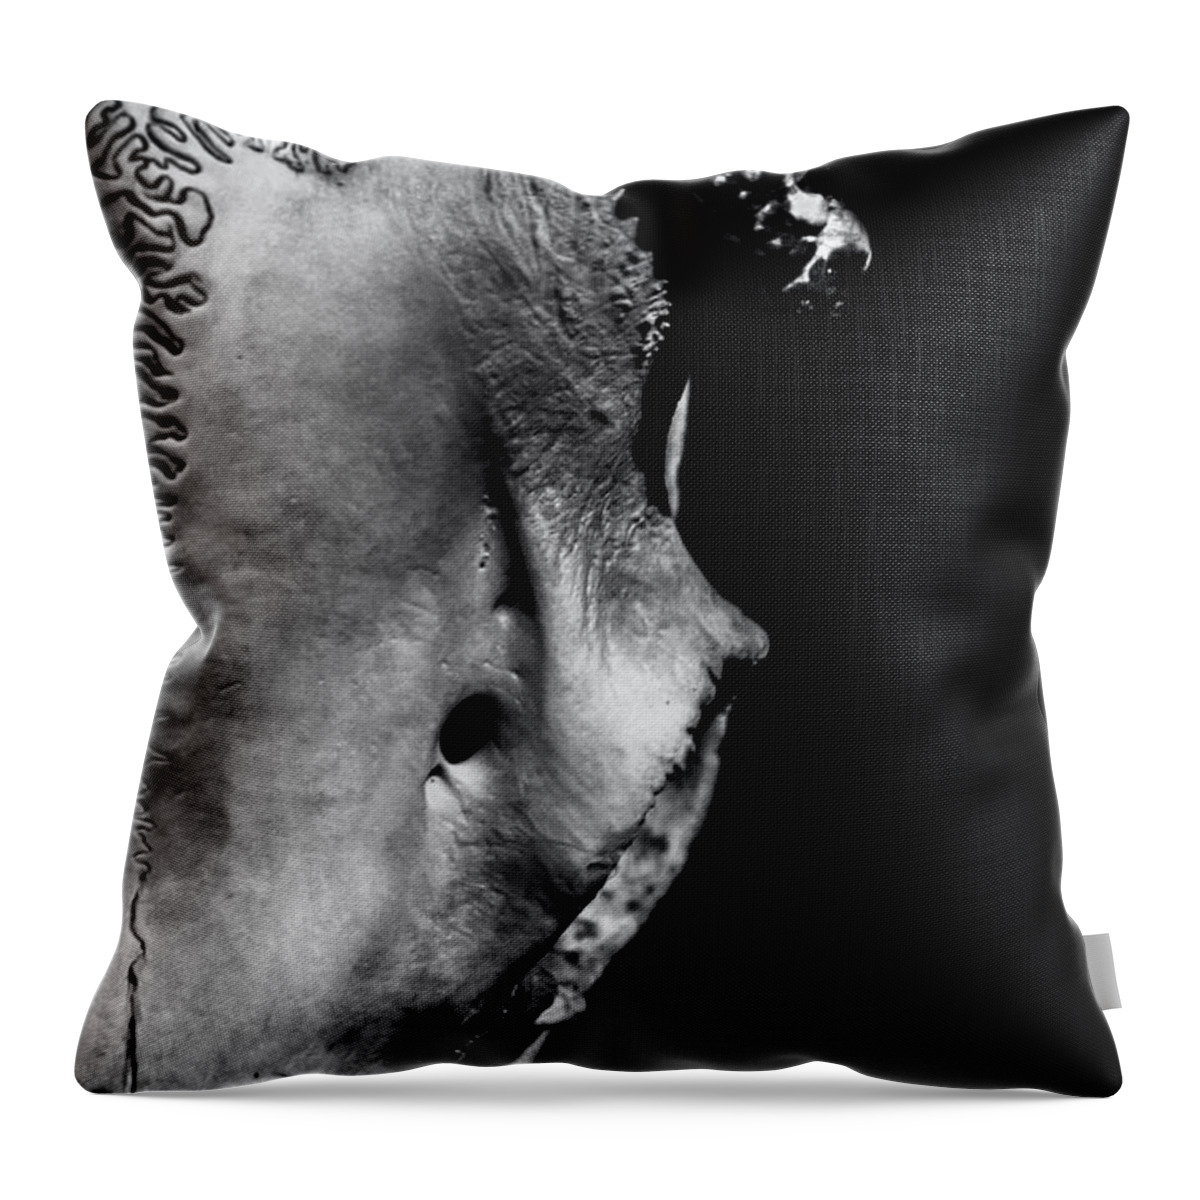 Deer Throw Pillow featuring the photograph Whitetail Deer Skull 1 - Left by James Aiken